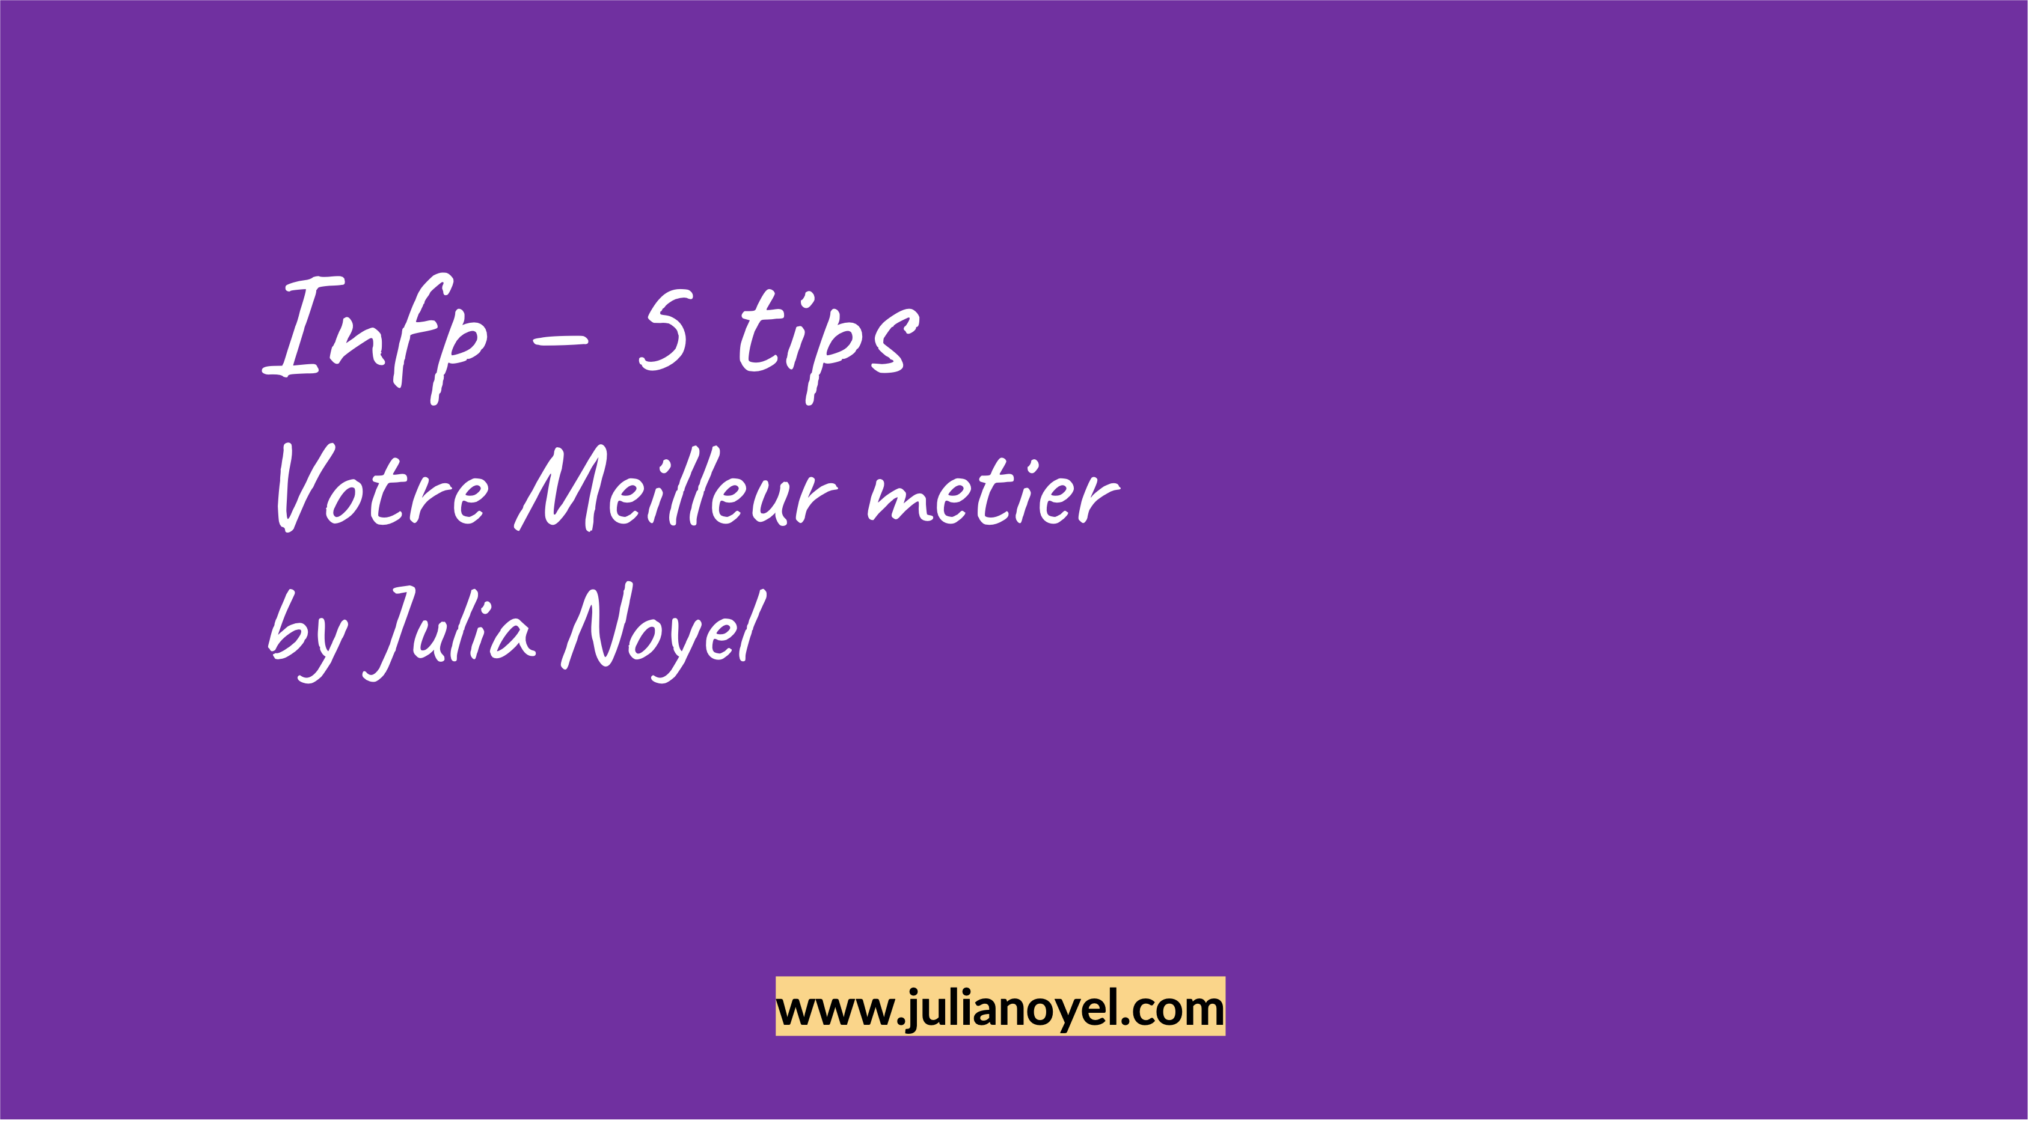 Infp – 5 tips Votre Meilleur metier by Julia Noyel